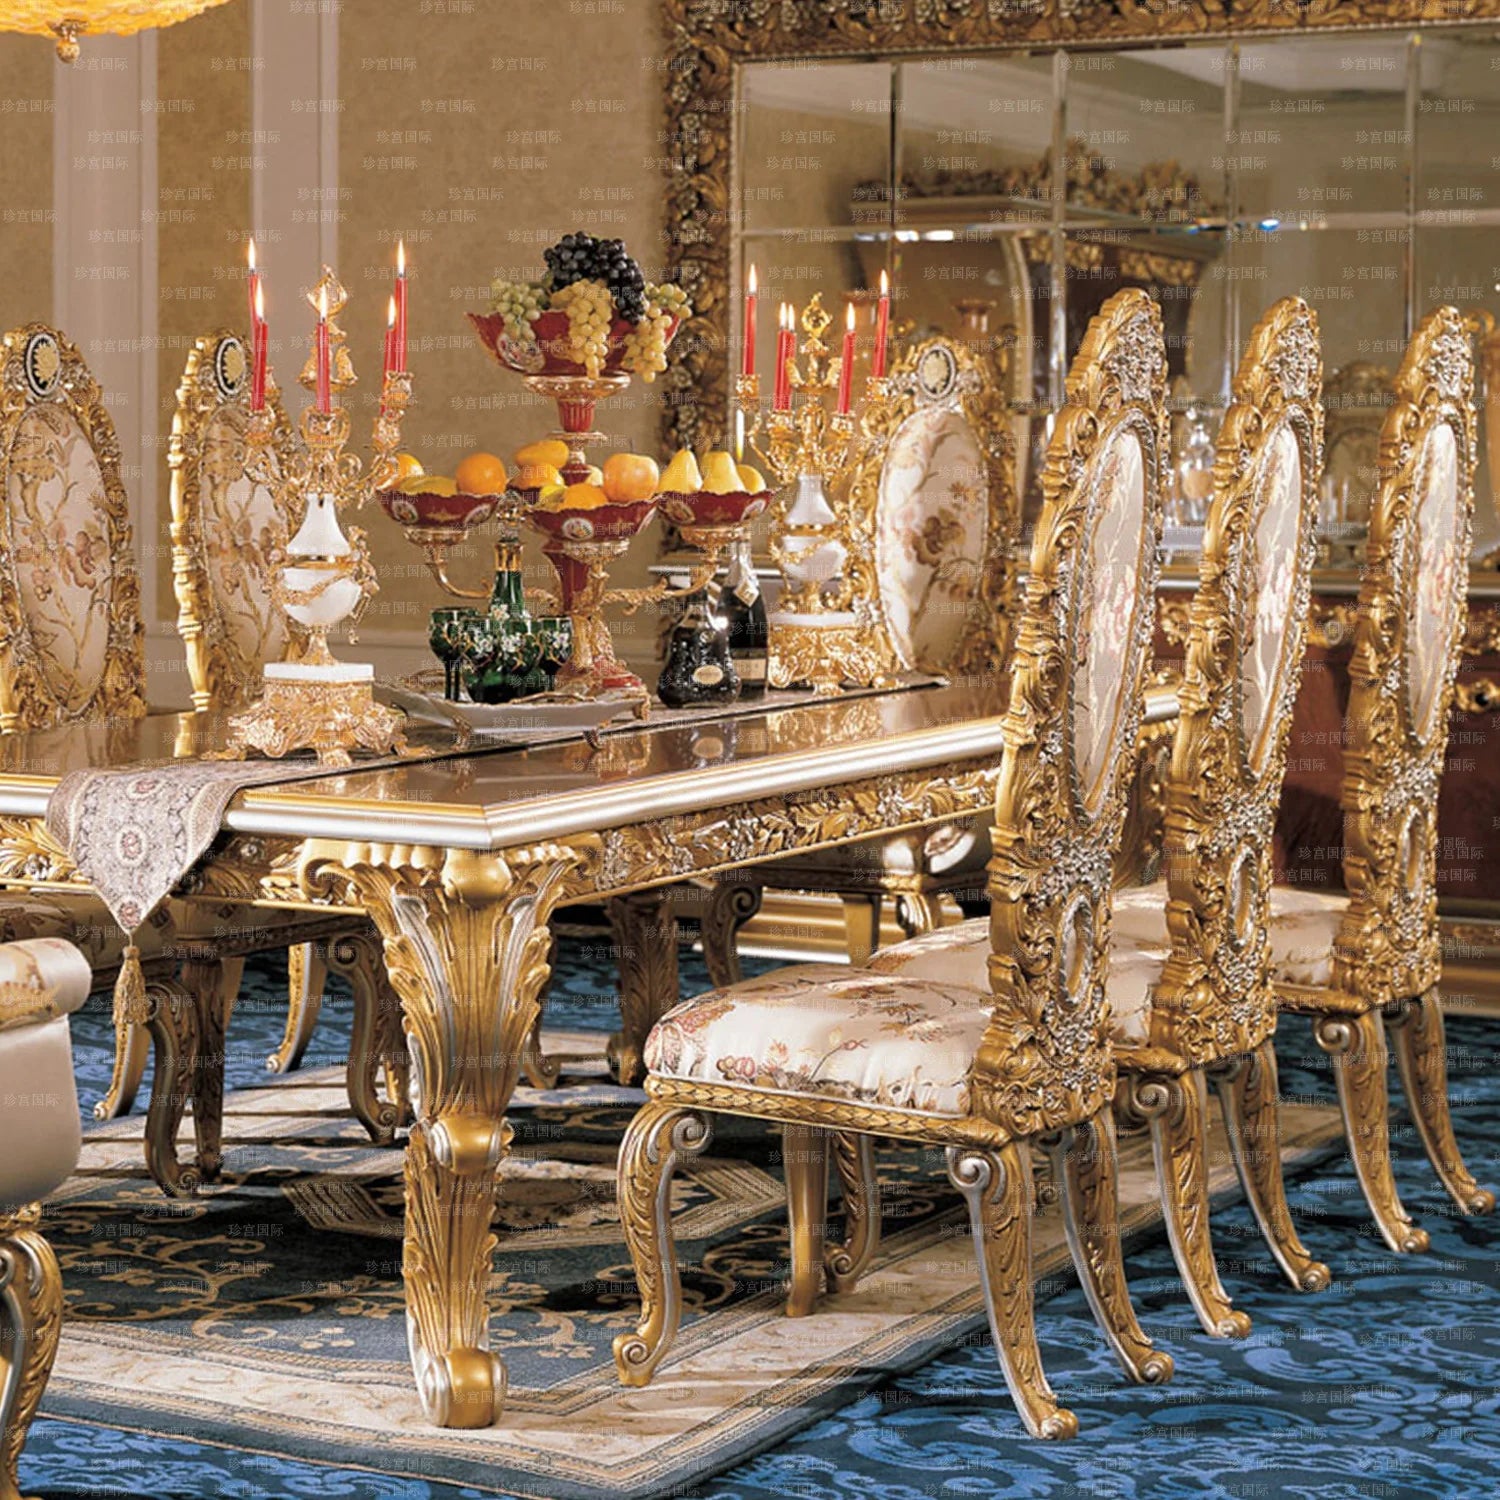 Yggdrasil Kroneprakt Spisesett - Royal Nordic Dining Table Set